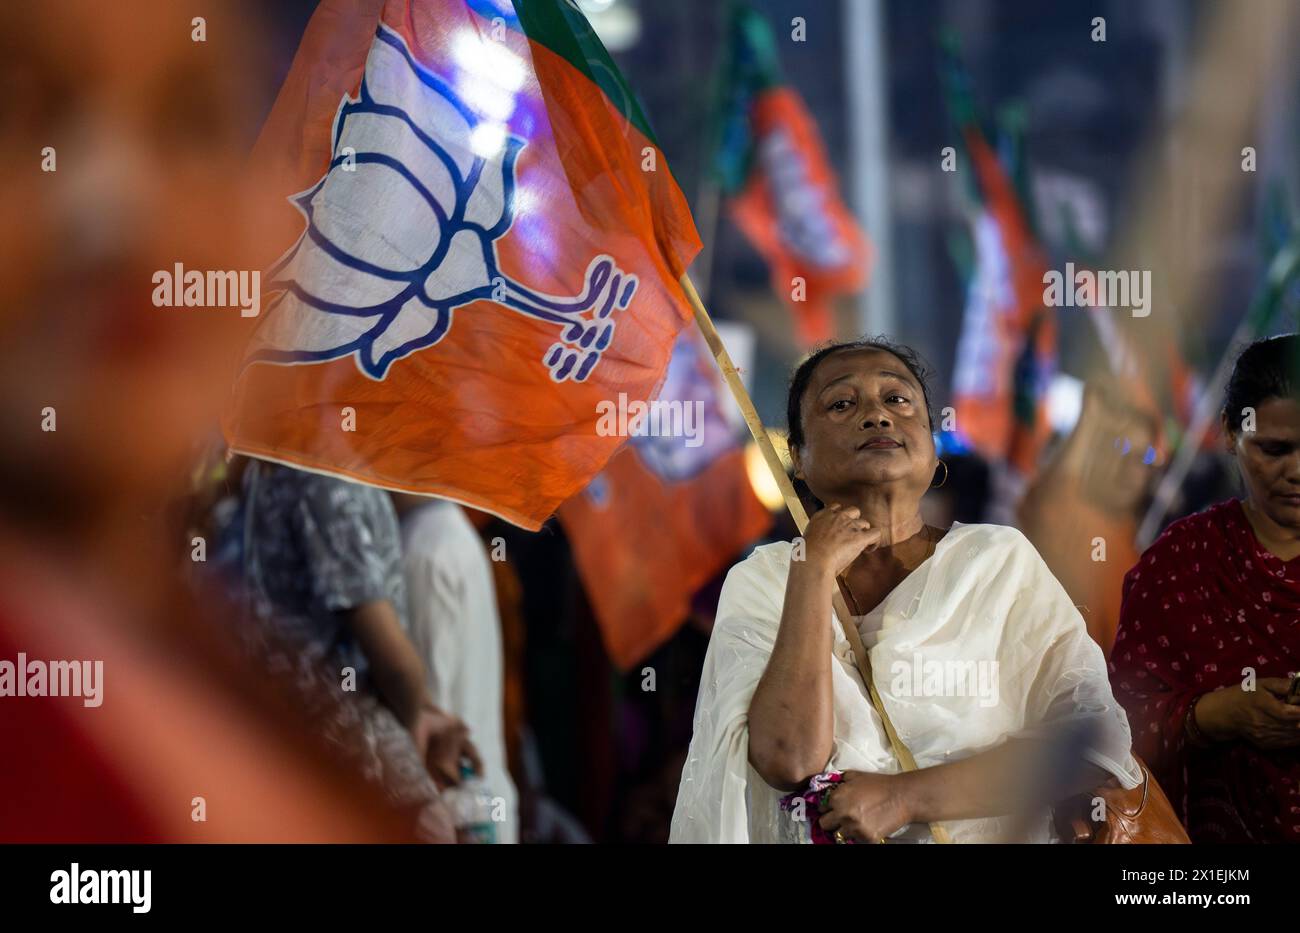 Des partisans du Bharatiya Janata Party (BJP) tenant le drapeau du BJP en attente de la tournée de Narendra Modi, lors d'une campagne électorale à Guwahati, Assam, Inde, le 16 avril 2024. Crédit : David Talukdar/Alamy Live News Banque D'Images